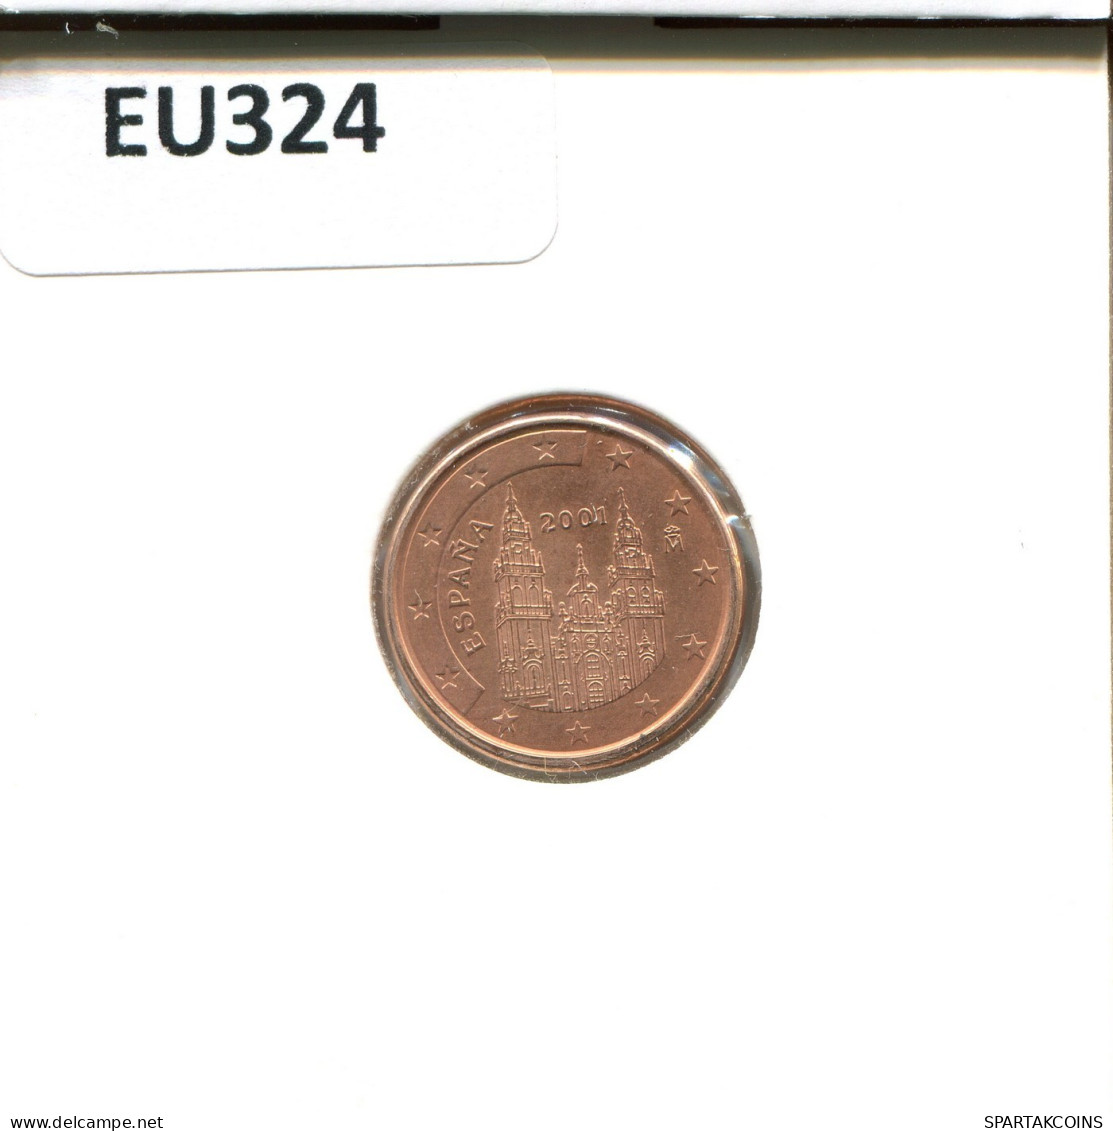 1 EURO CENT 2001 SPAIN Coin #EU324.U.A - Spanien